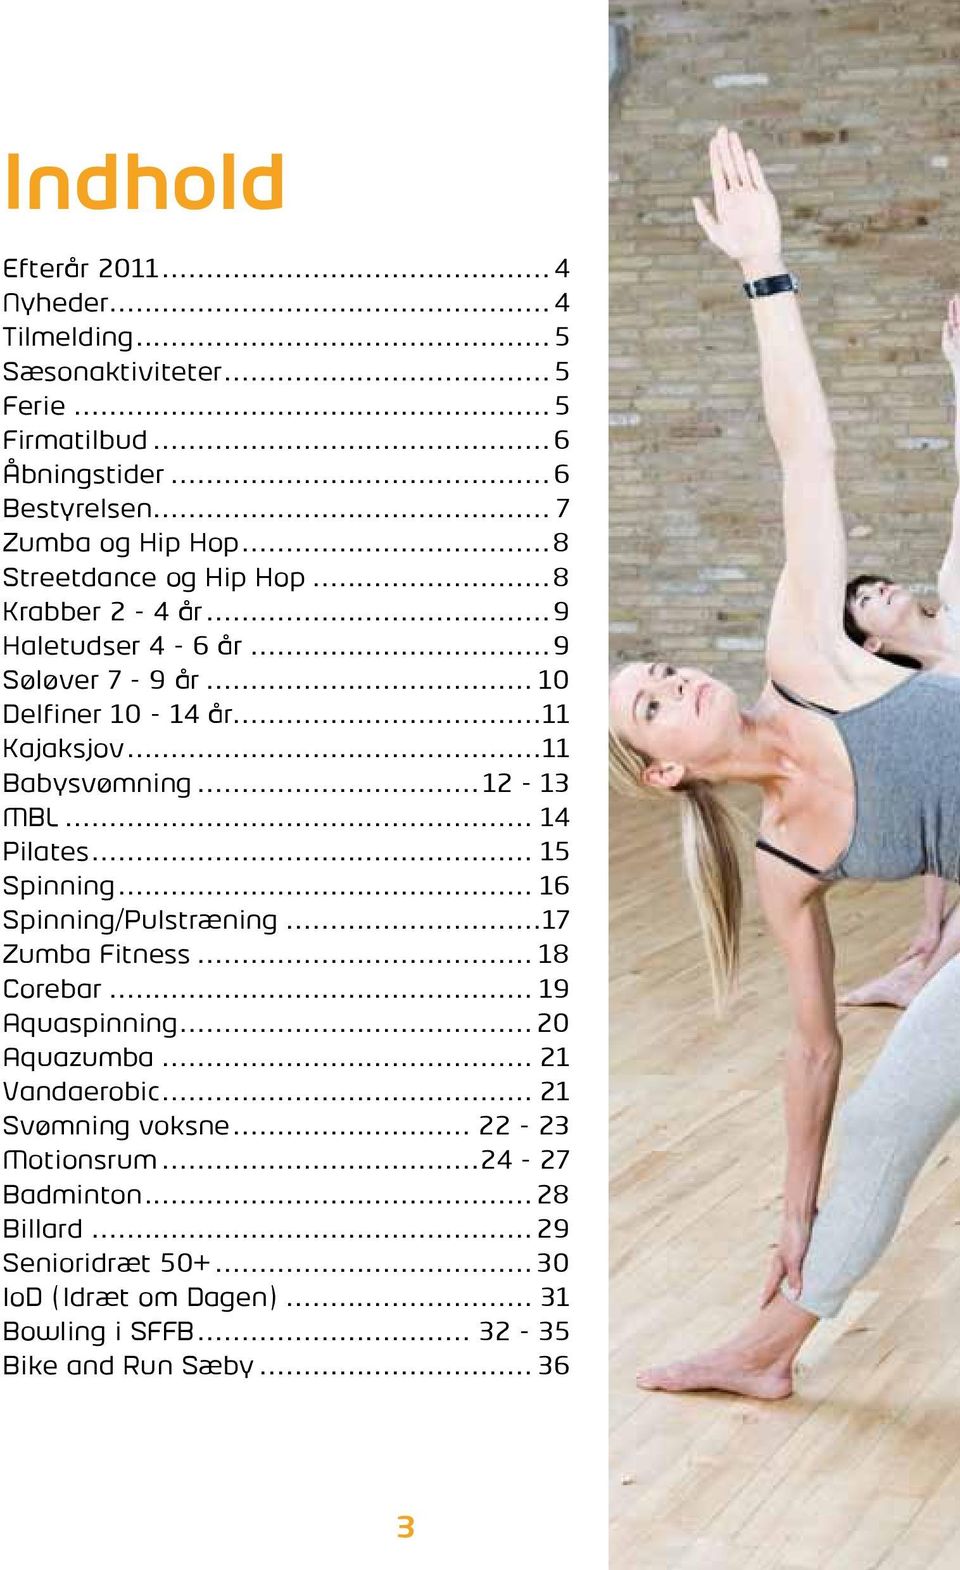 .. 14 Pilates... 15 Spinning... 16 Spinning/Pulstræning...17 Zumba Fitness... 18 Corebar... 19 Aquaspinning...20 Aquazumba... 21 Vandaerobic.